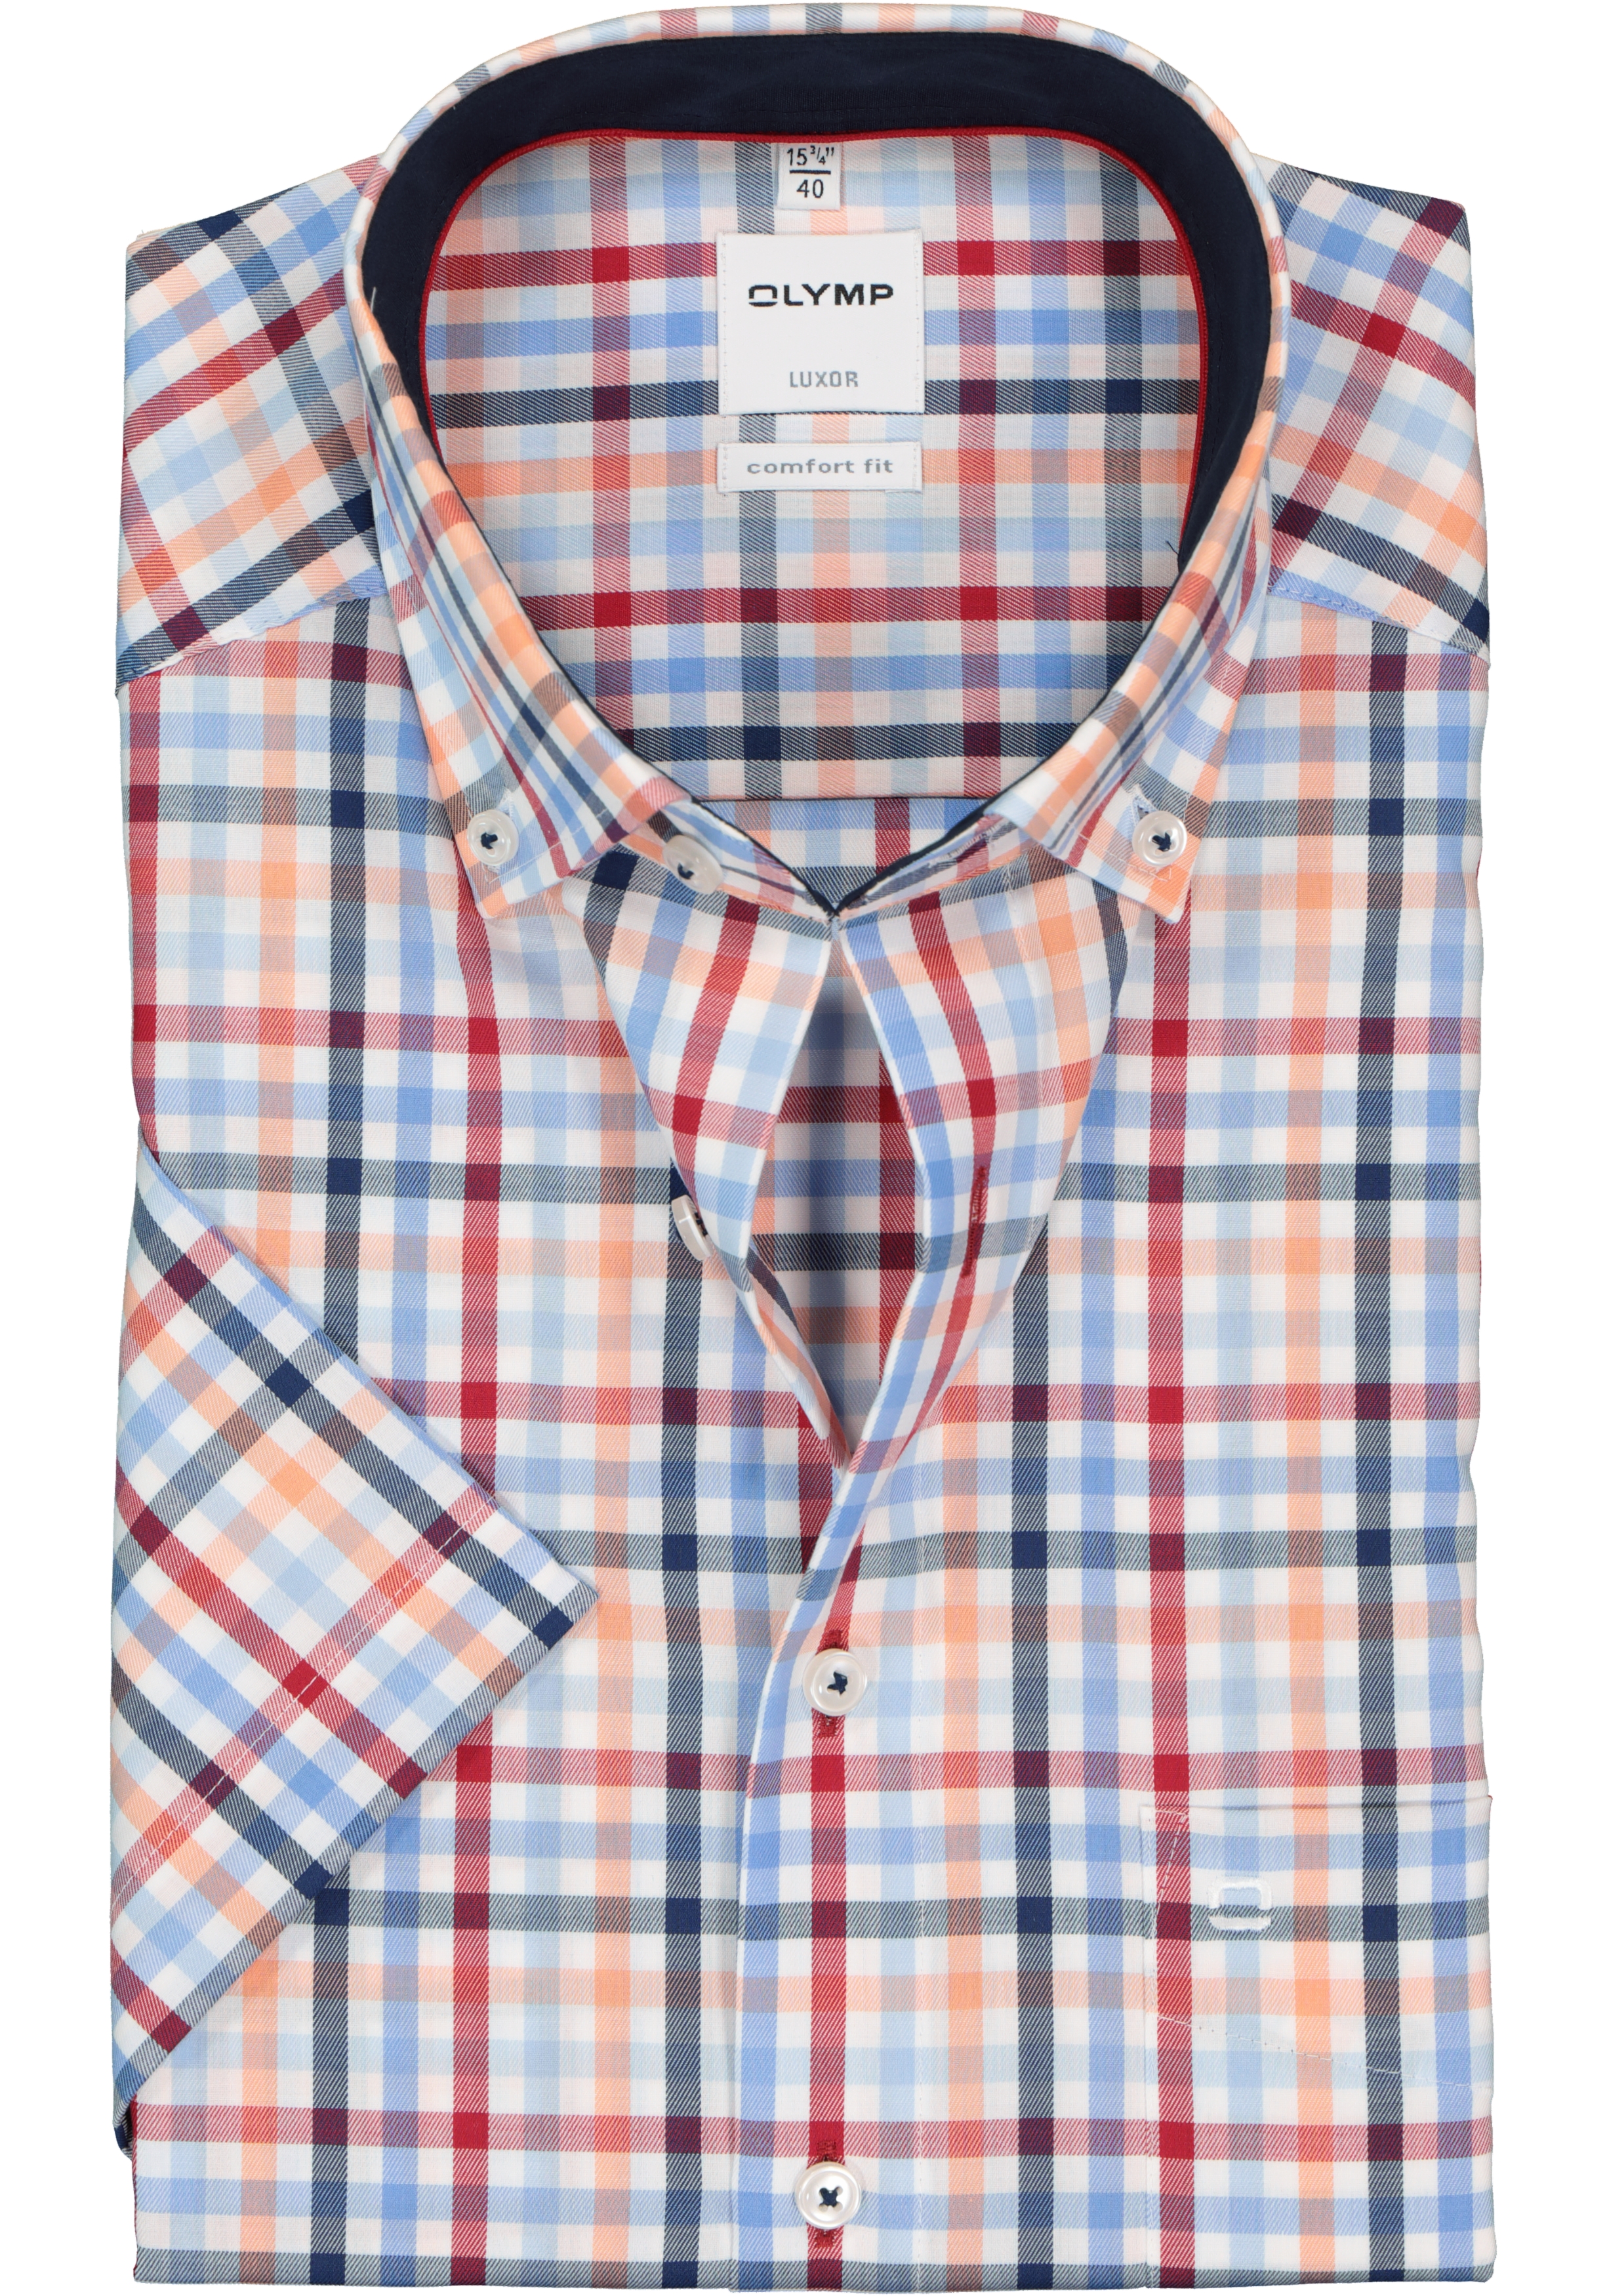 OLYMP Luxor comfort fit overhemd, korte mouw, wit, blauw, rood en oranje geruit (contrast)